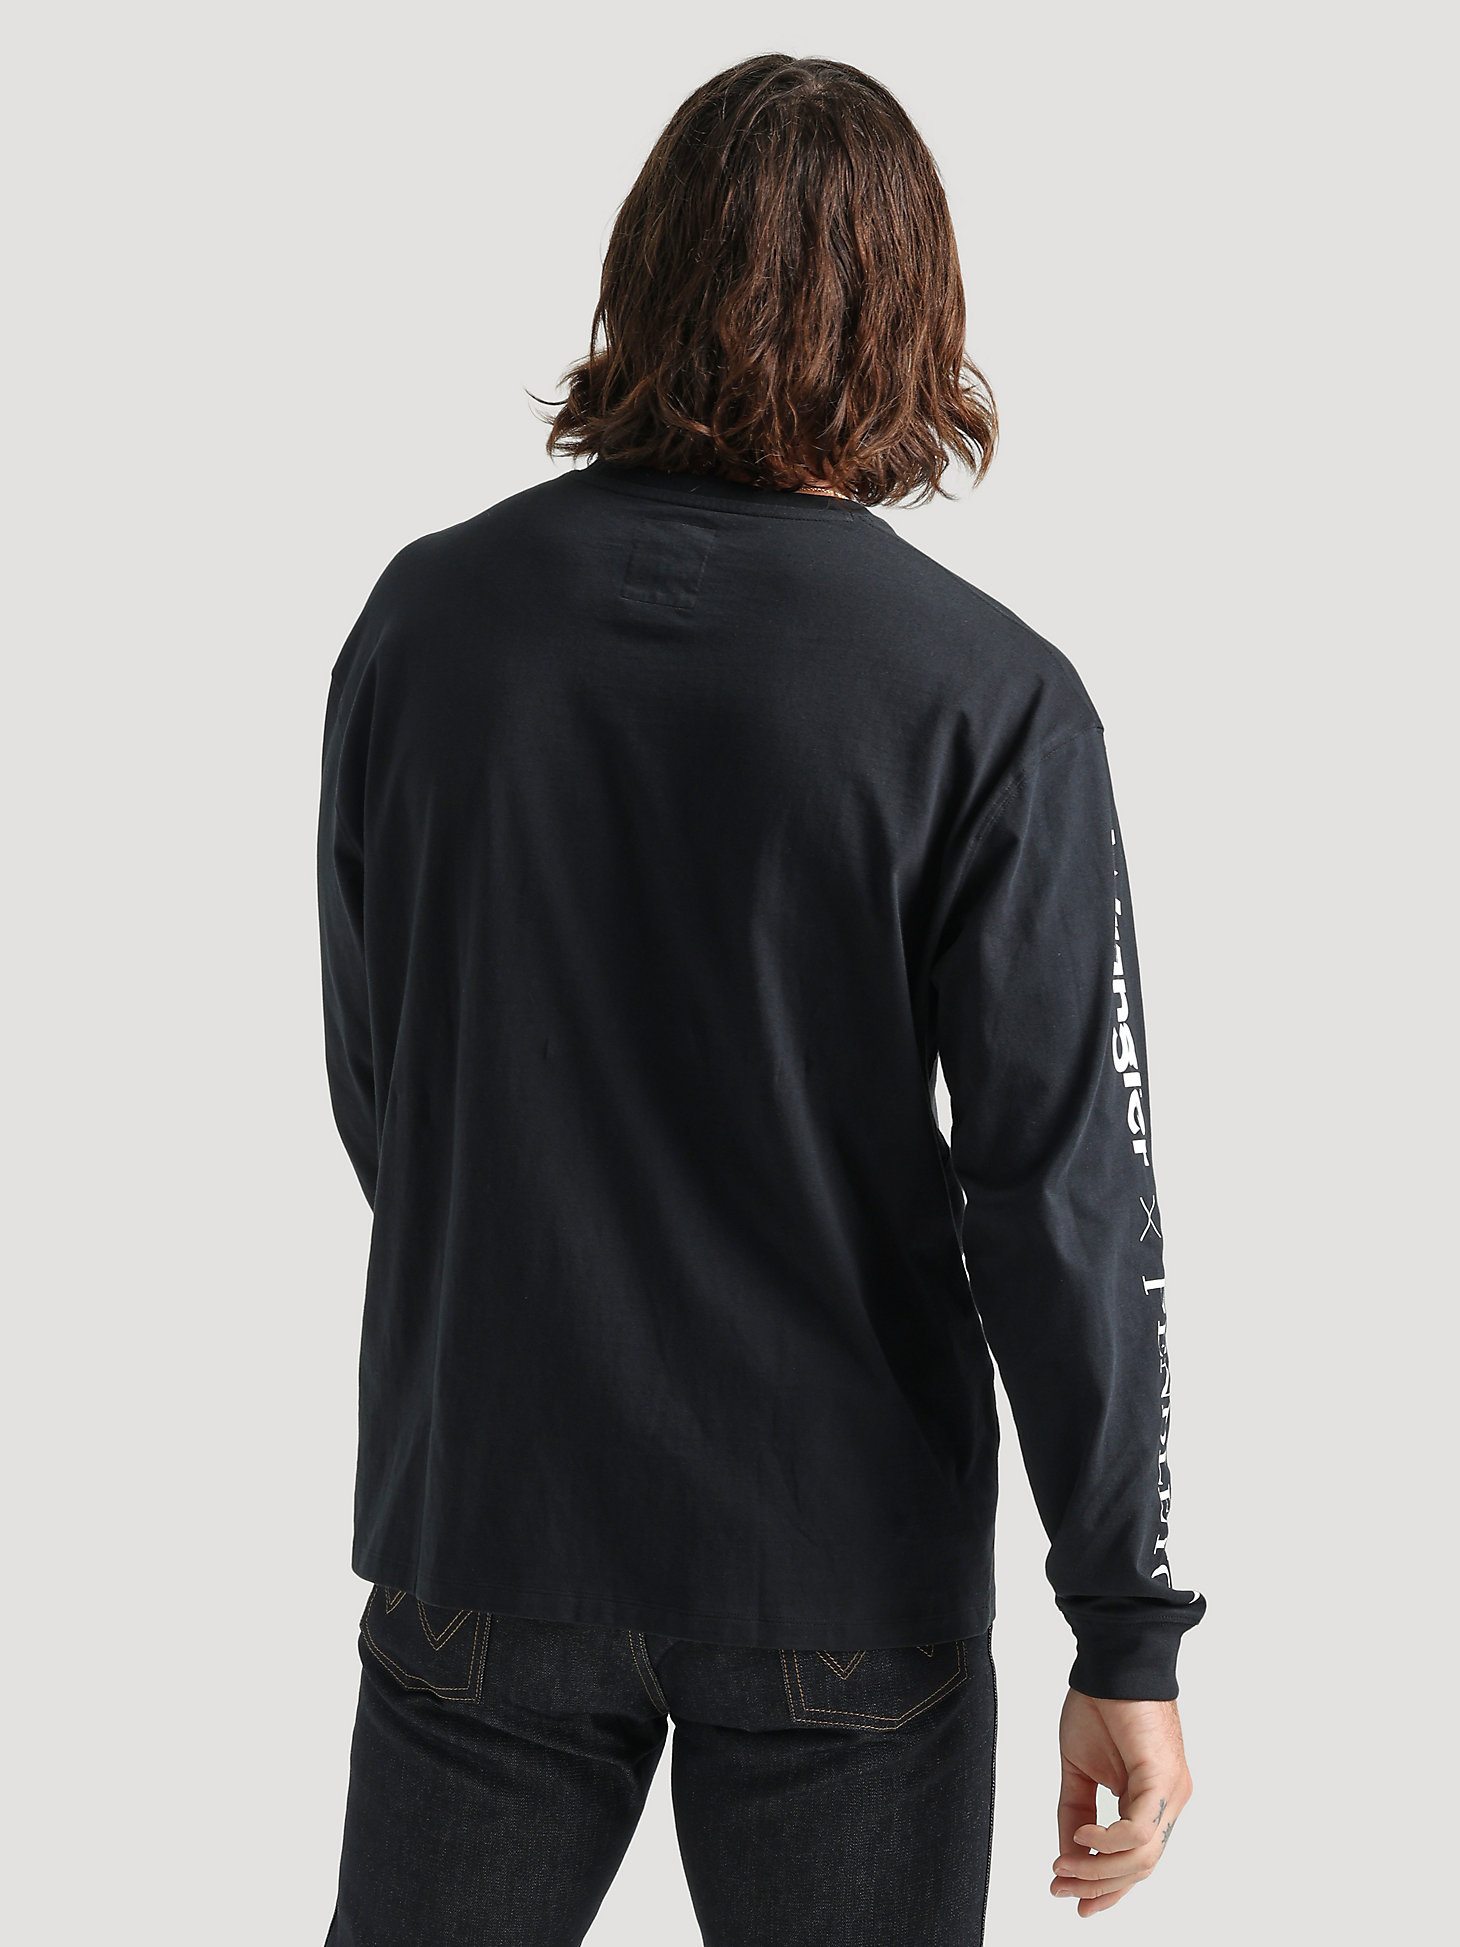 Wrangler x Pendleton Men's Logo Sleeve T-Shirt in Black Beauty alternative view 1